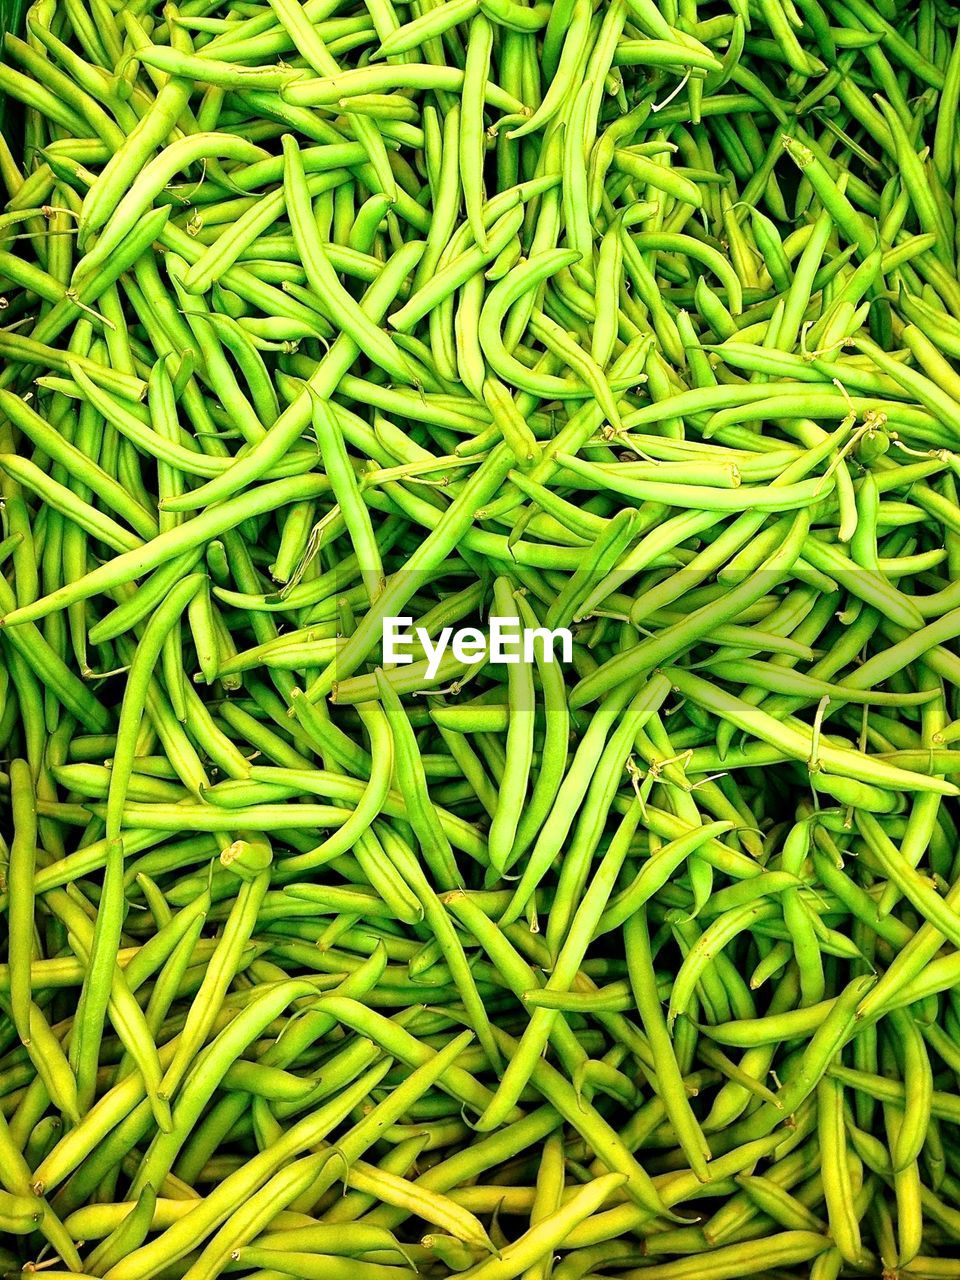 Full frame shot of green beans in market